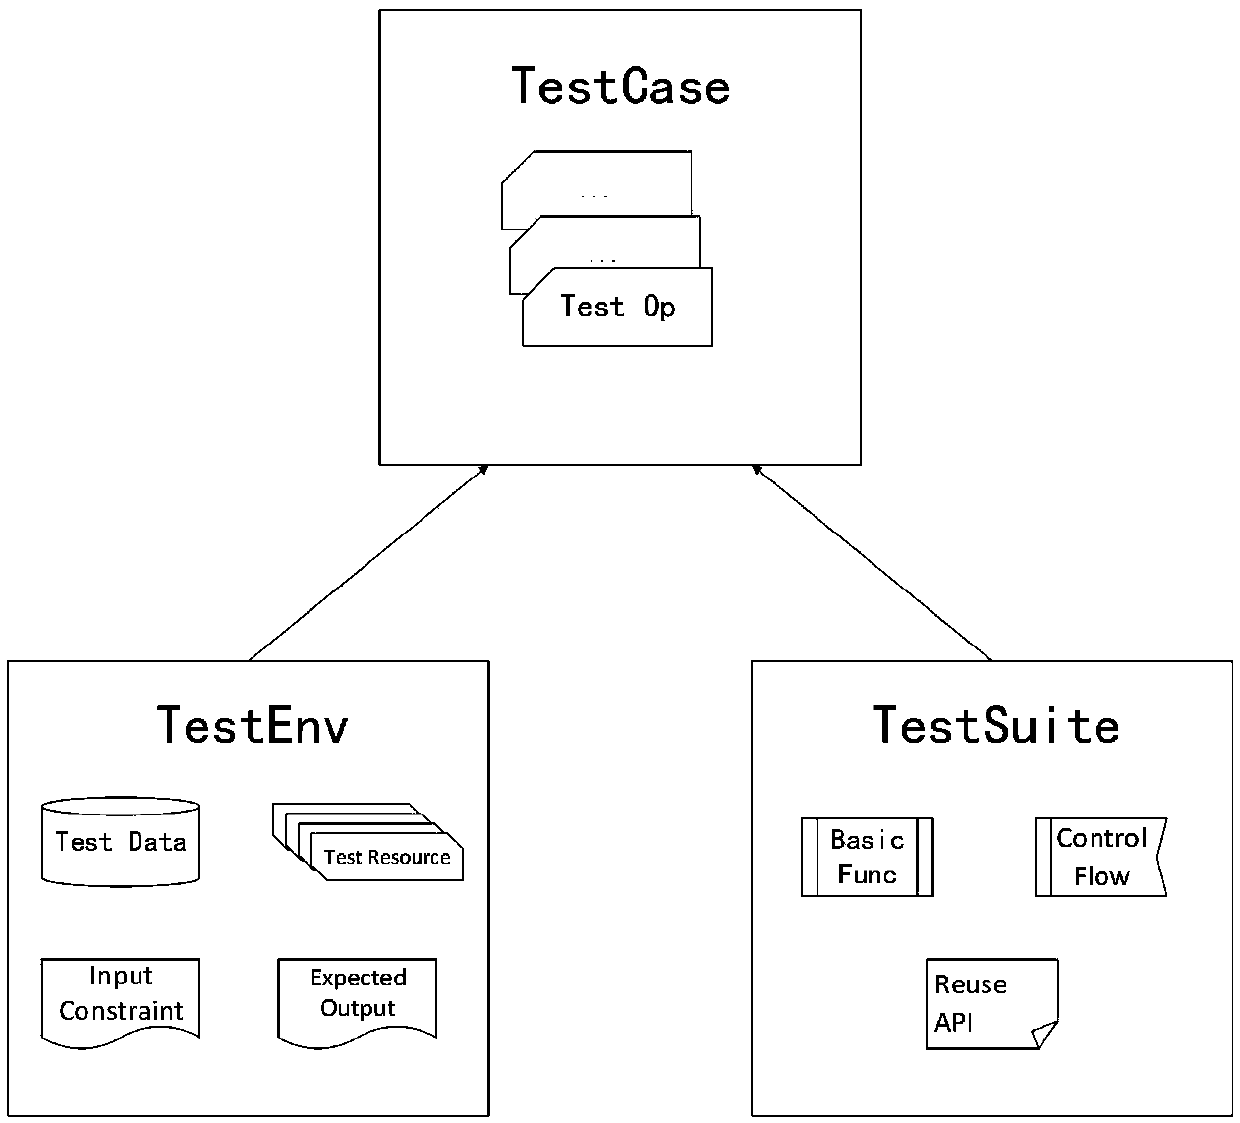 Automatic simulation test optimization method based on state behavior tree